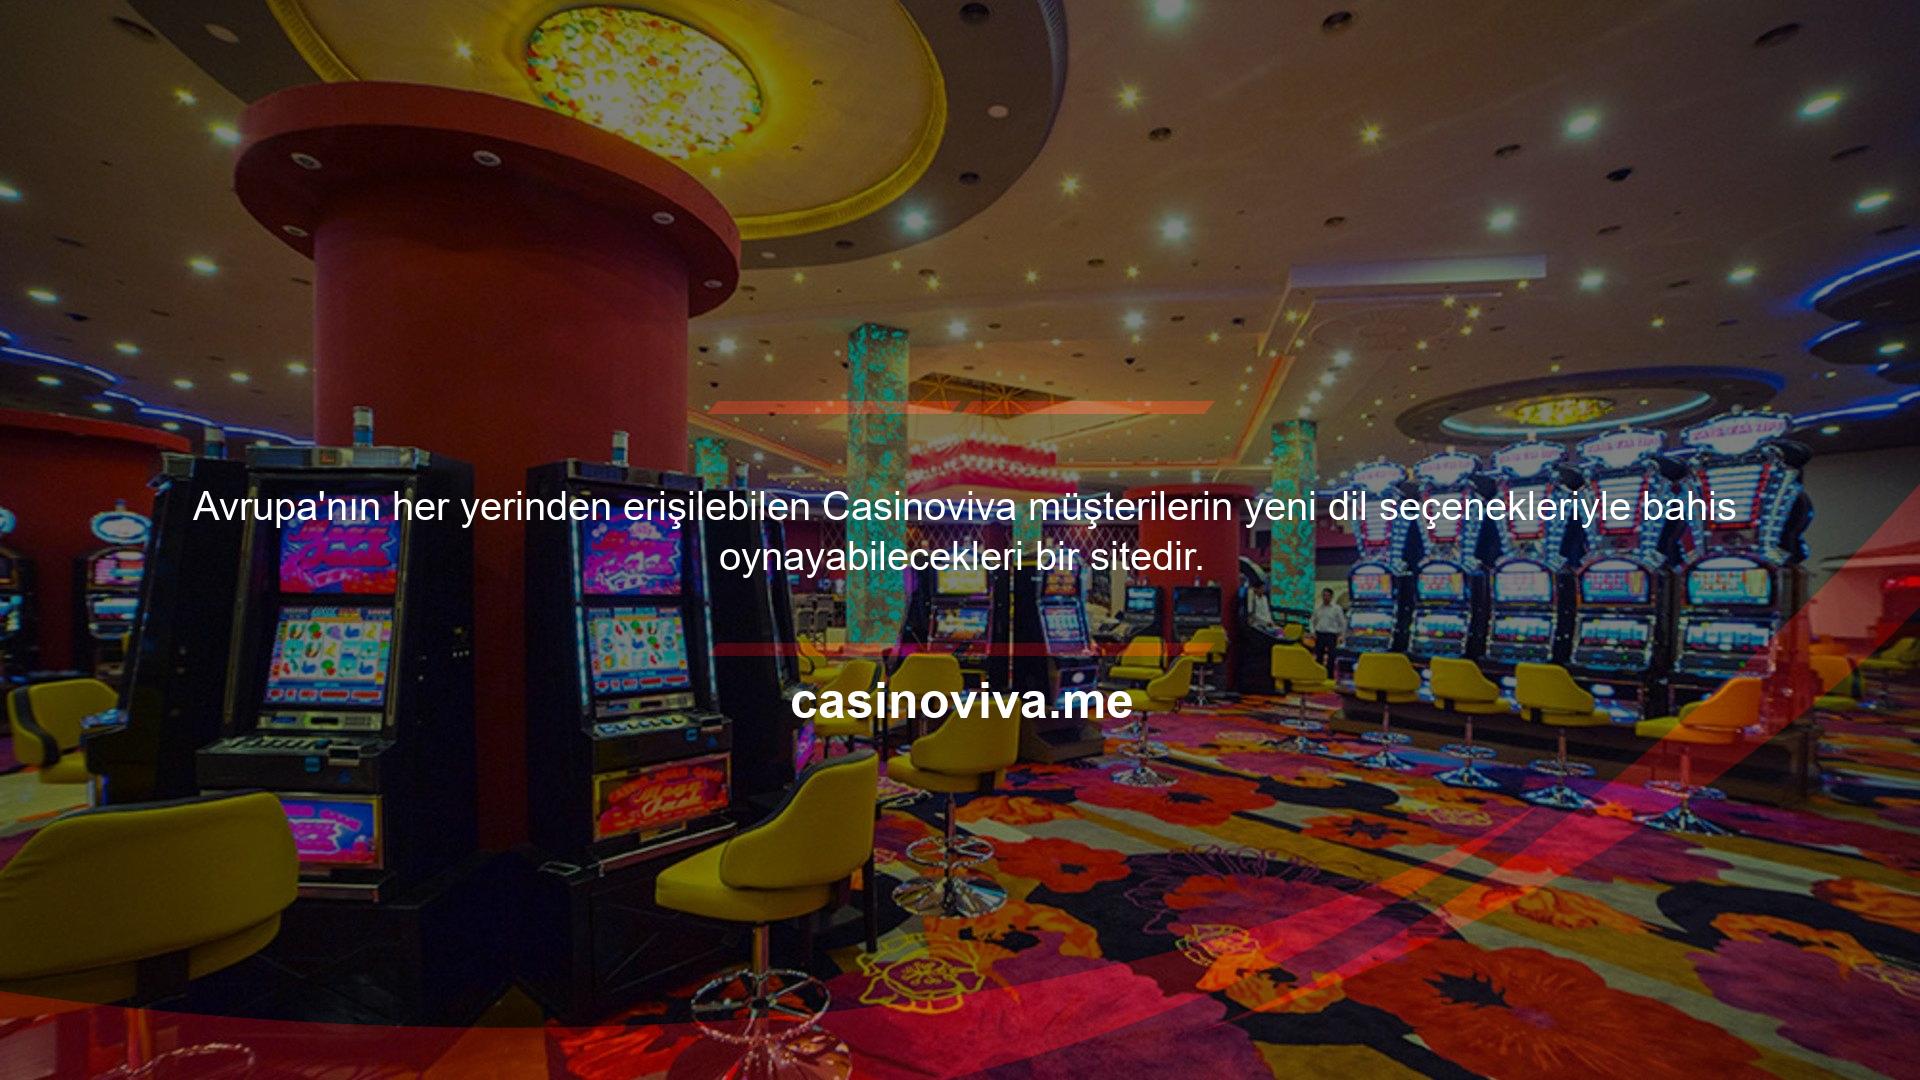 Avrupa'nın her yerinden erişilebilen Casinoviva